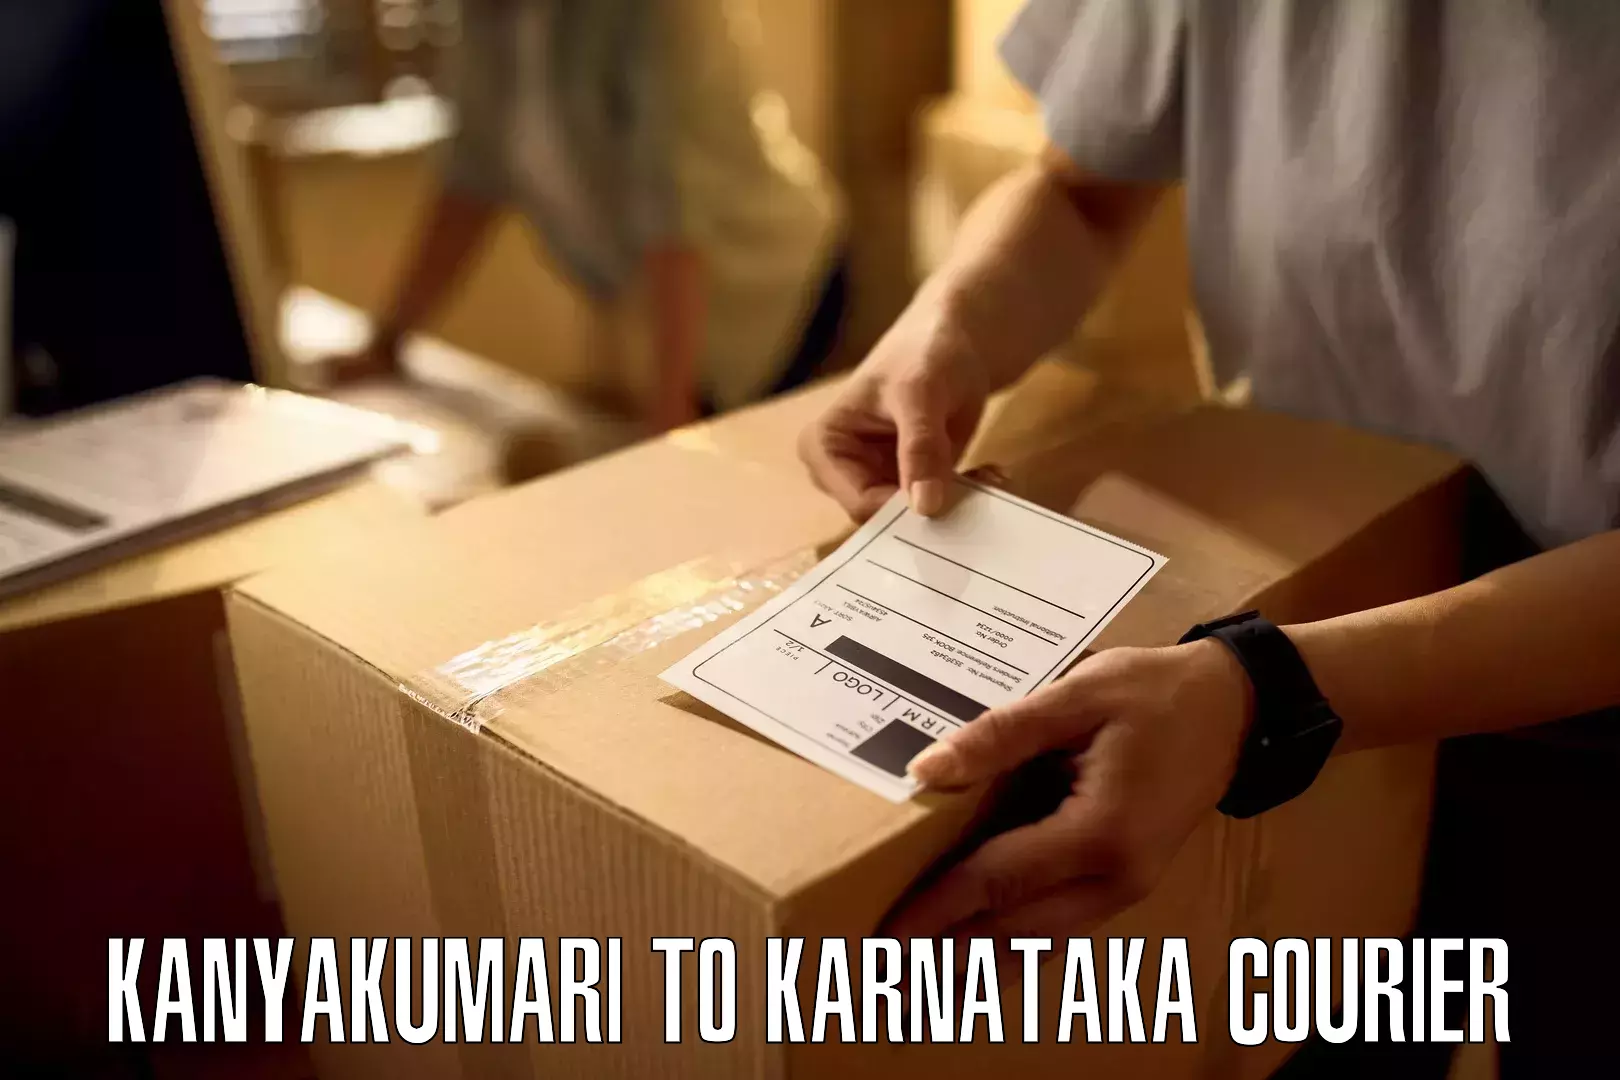 Dynamic courier operations Kanyakumari to Ukkadagatri